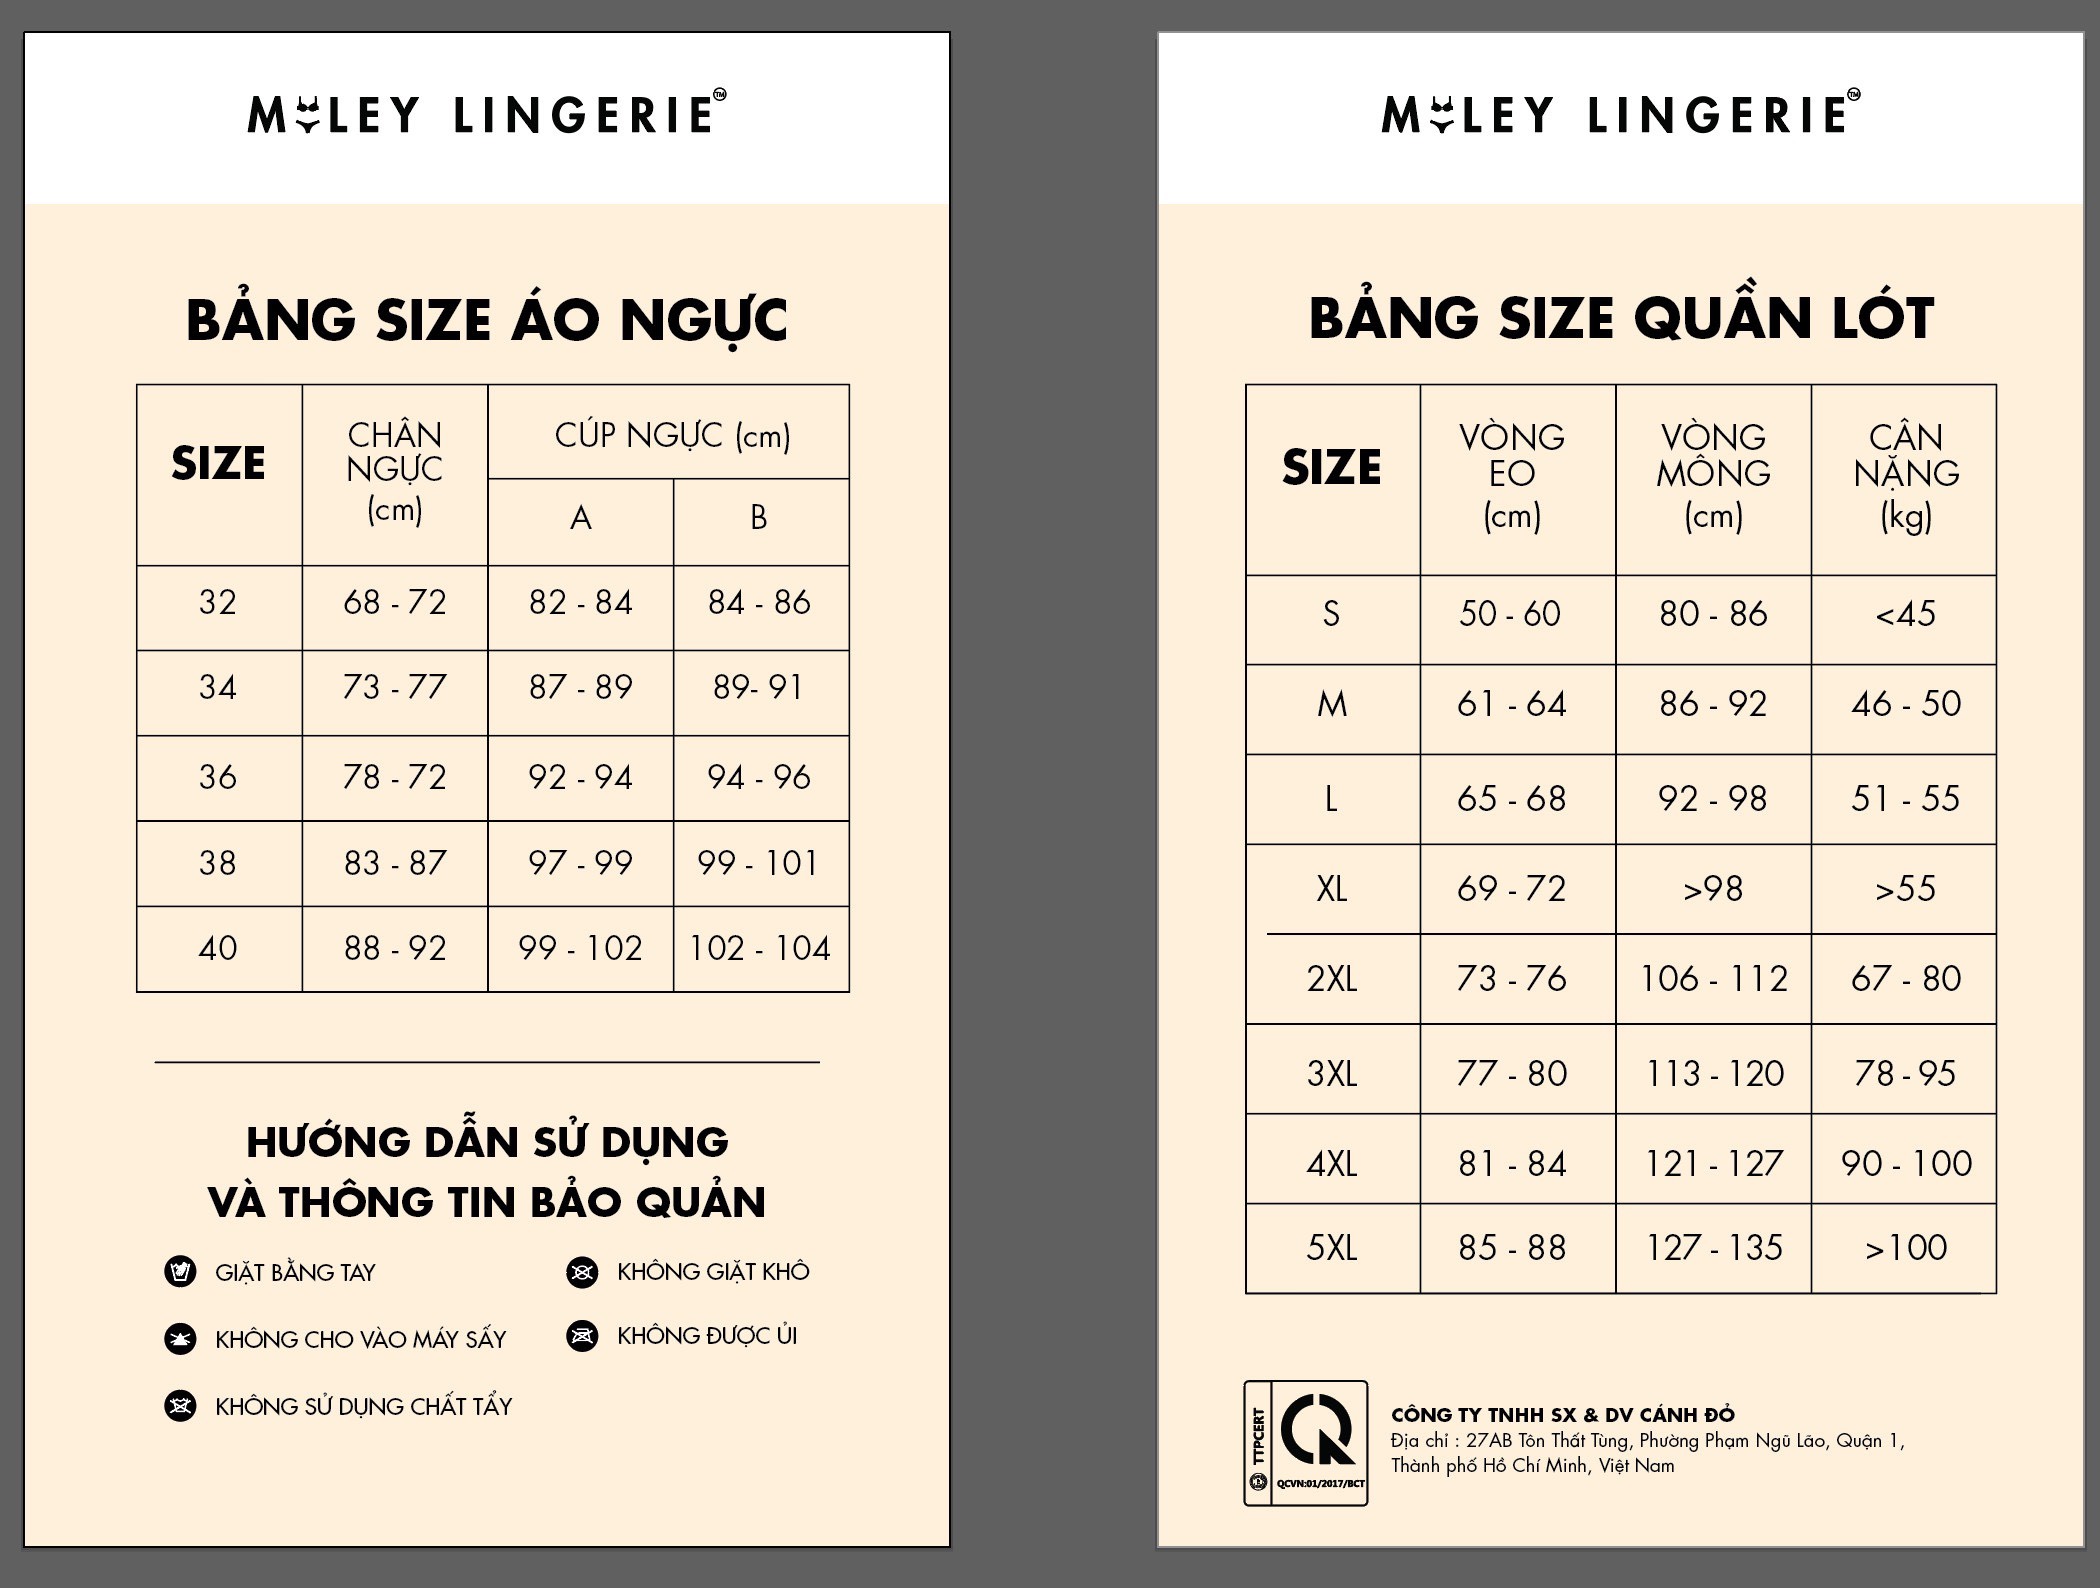 Bộ Đồ Lót Cổ Chữ V Phối Quần Boy Short Sợi Vải Thiên Nhiên Miley Lingerie